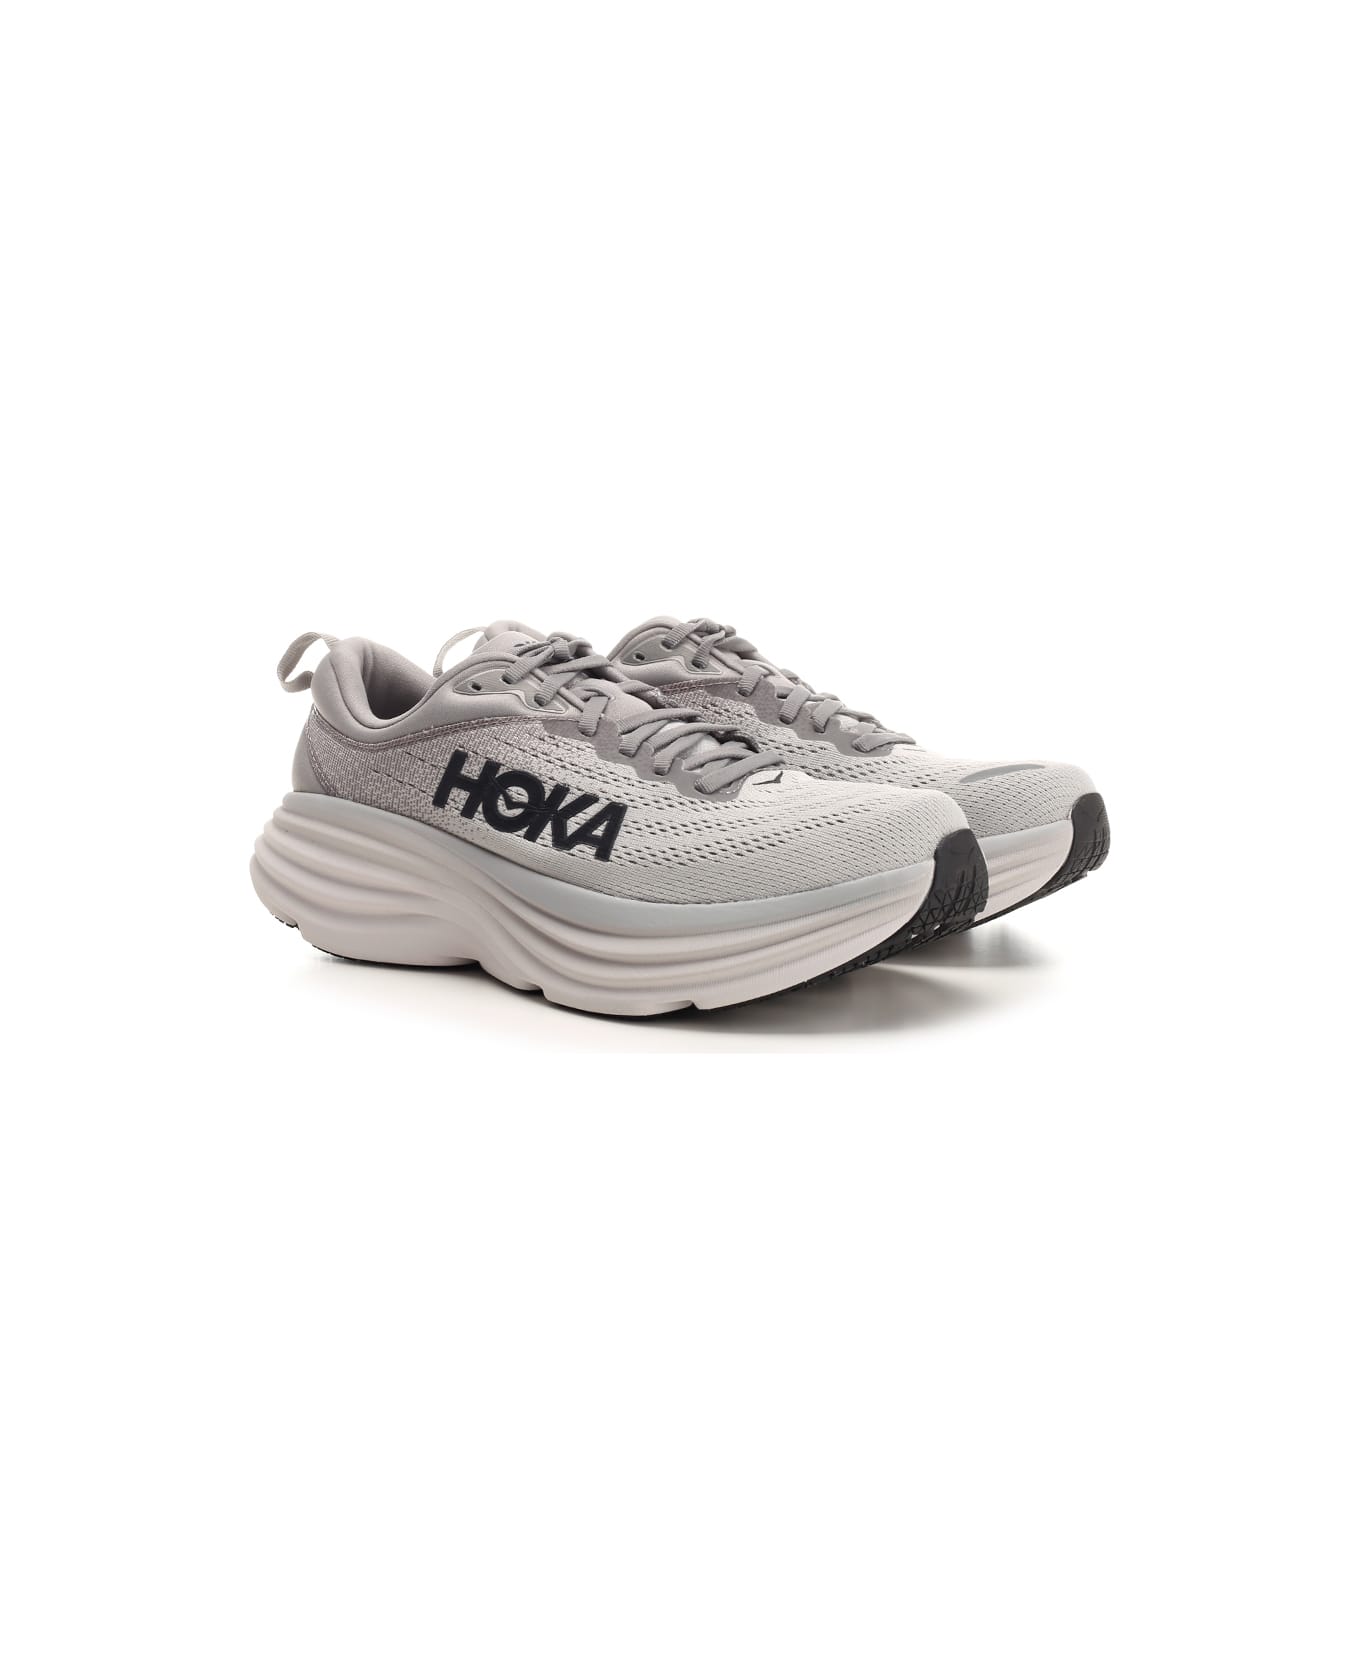 Hoka One One "bondi" Sneakers - Grey